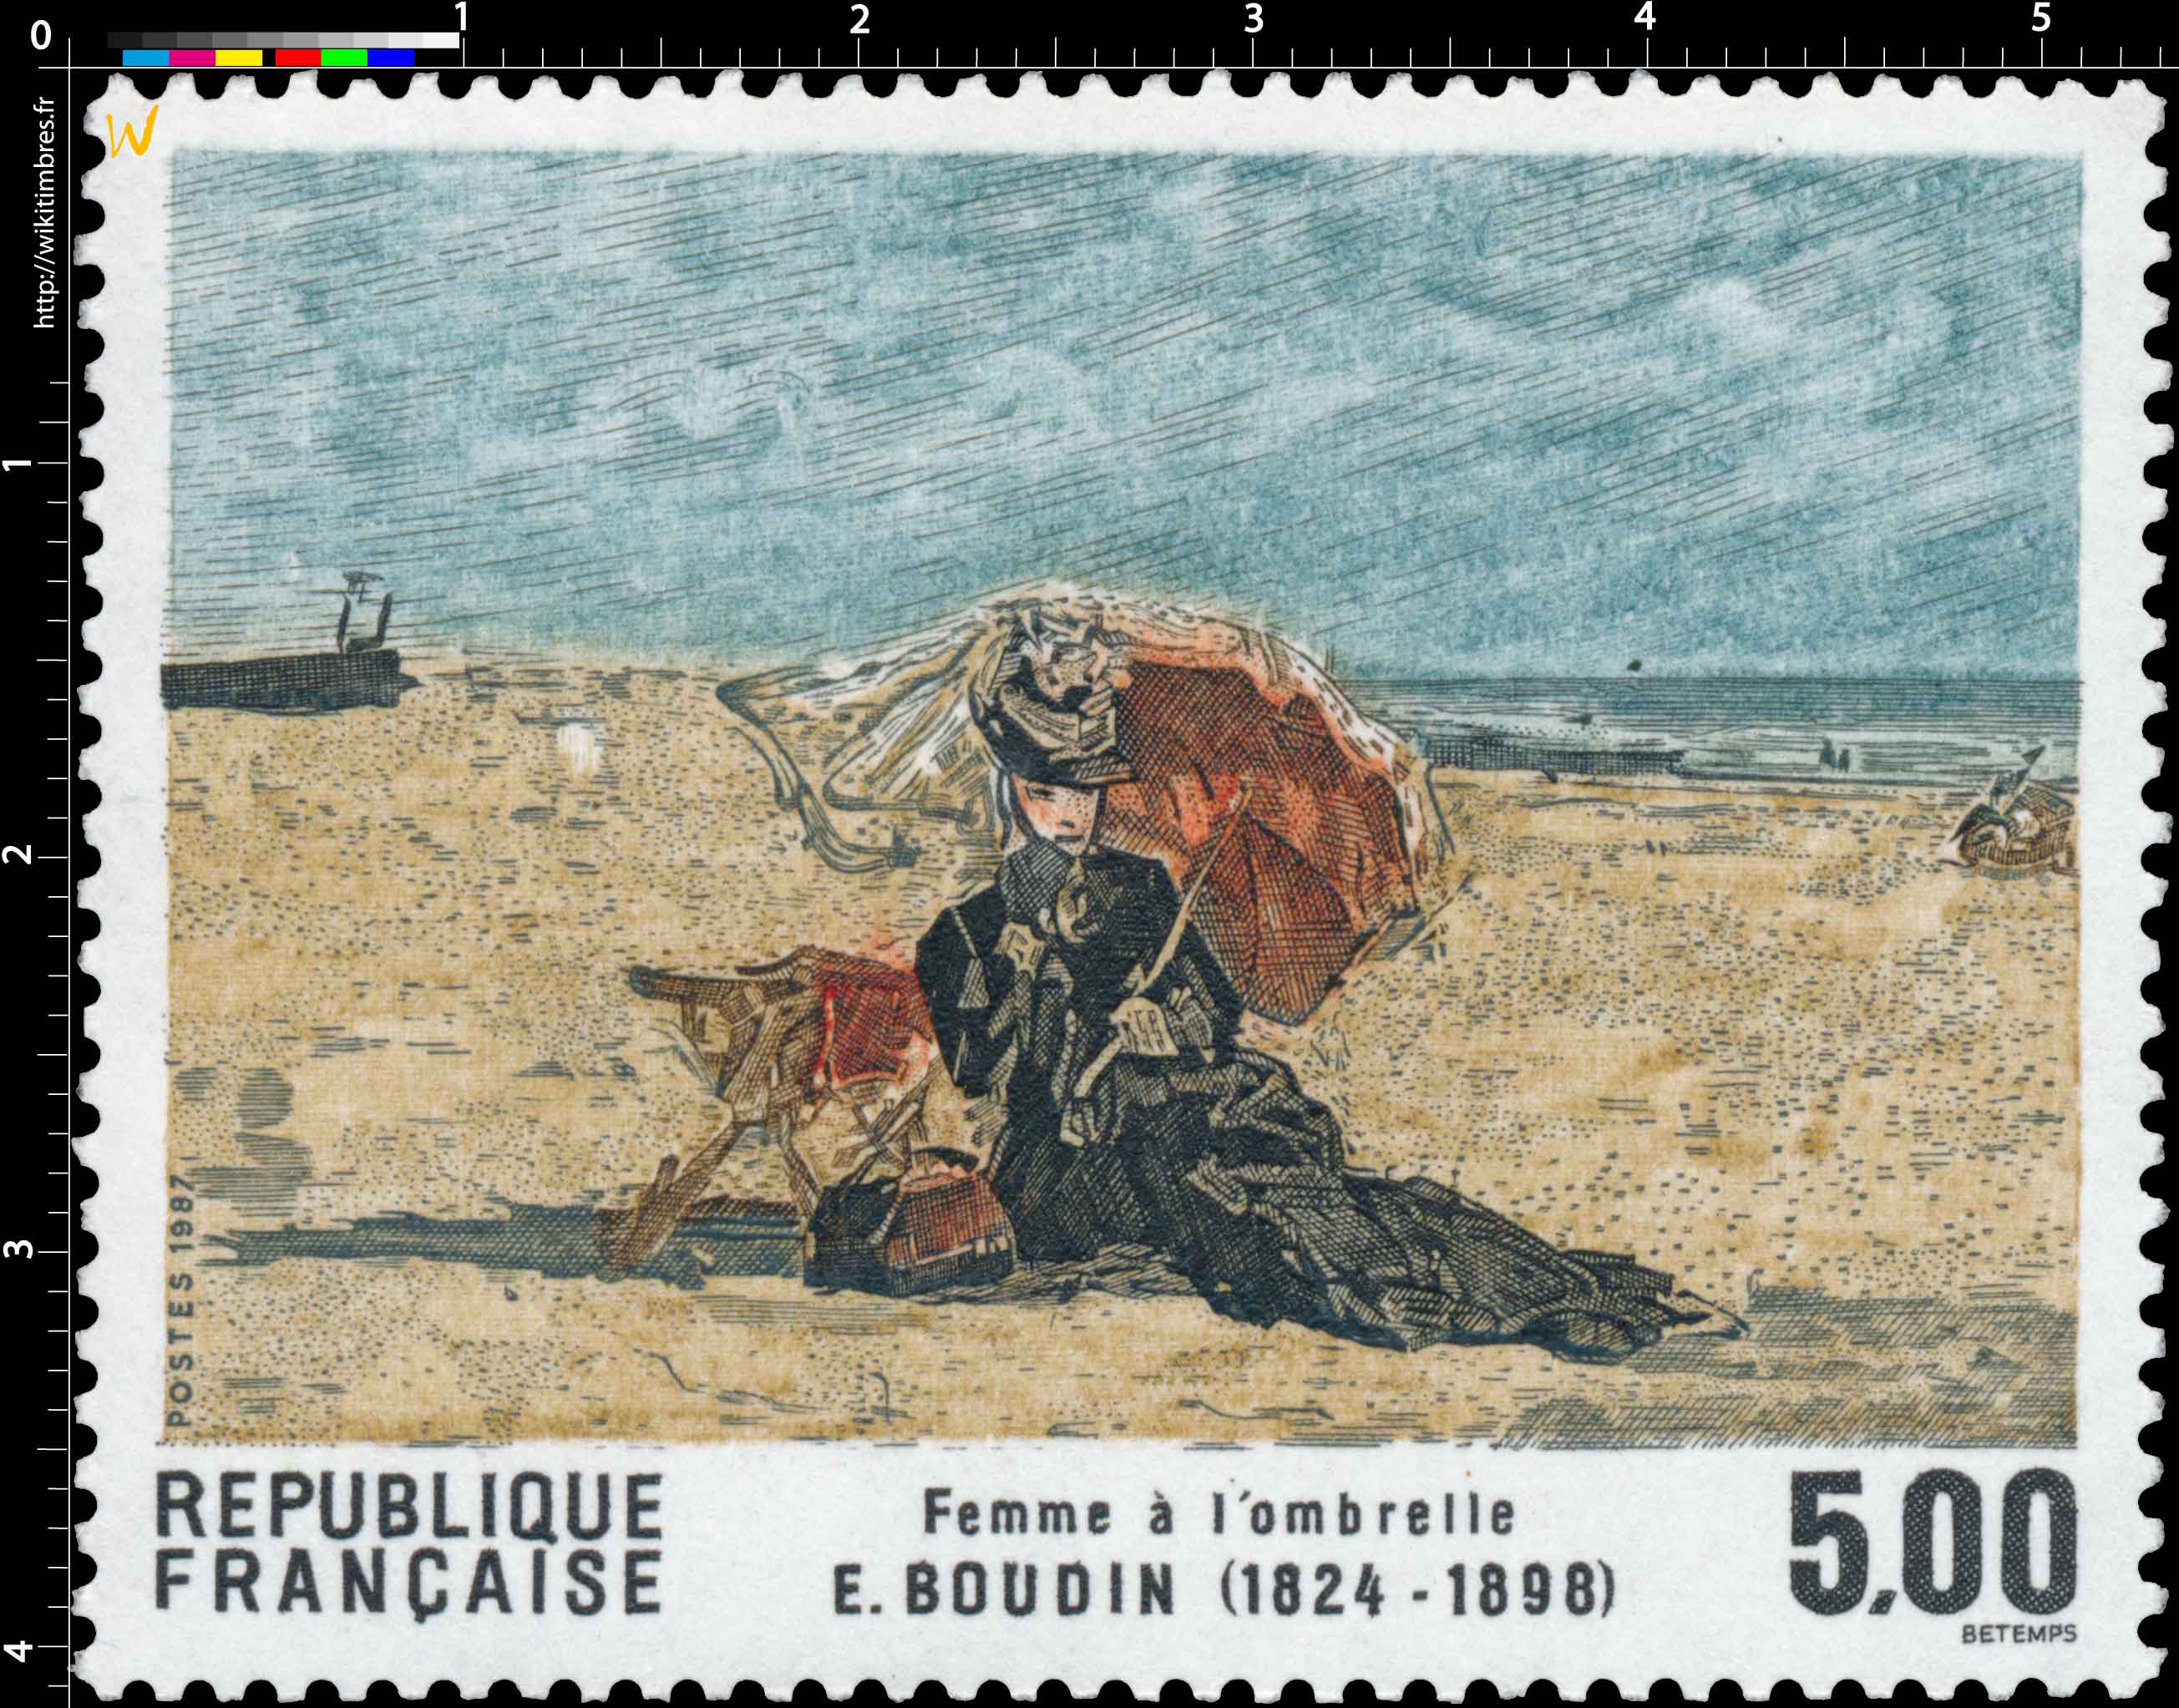 1987 Femme à l'ombrelle E. BOUDIN (1824-1898)